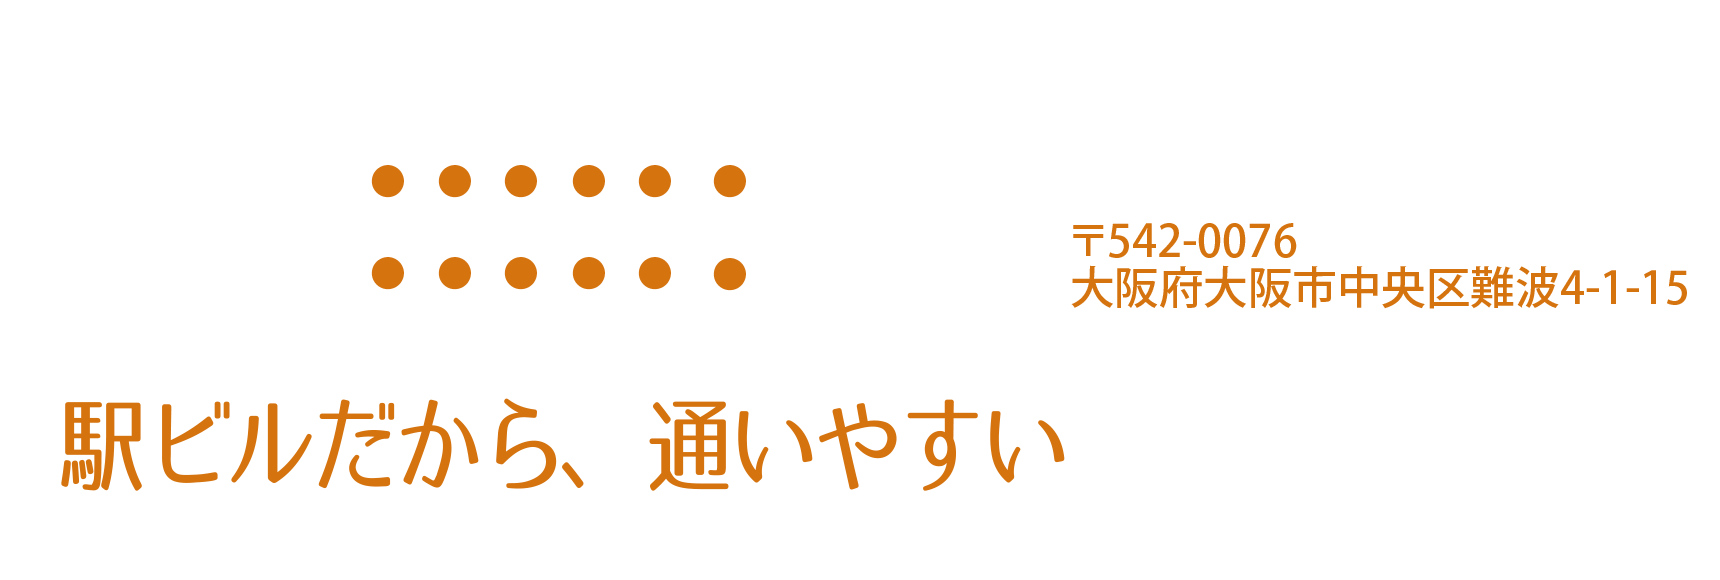 駅ビルだから、通いやすい。大阪府大阪市中央区難波4-1-15、ご予約は06-6644-5661まで。